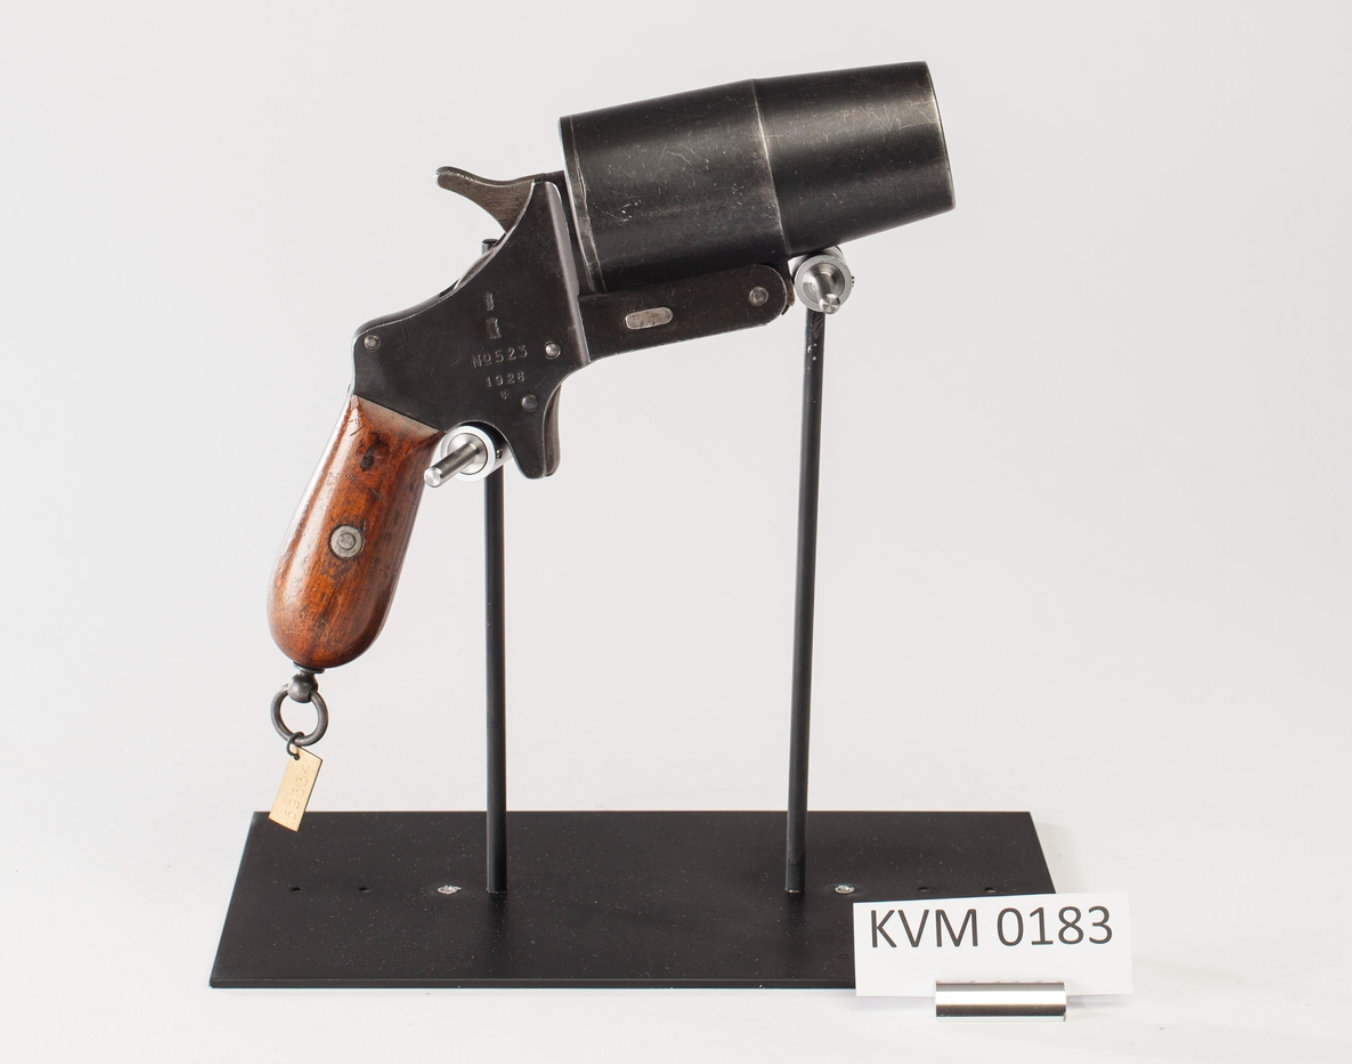 ./guns/signal/bilder/Signal-Kongsberg-Prove-523-1928-1.png